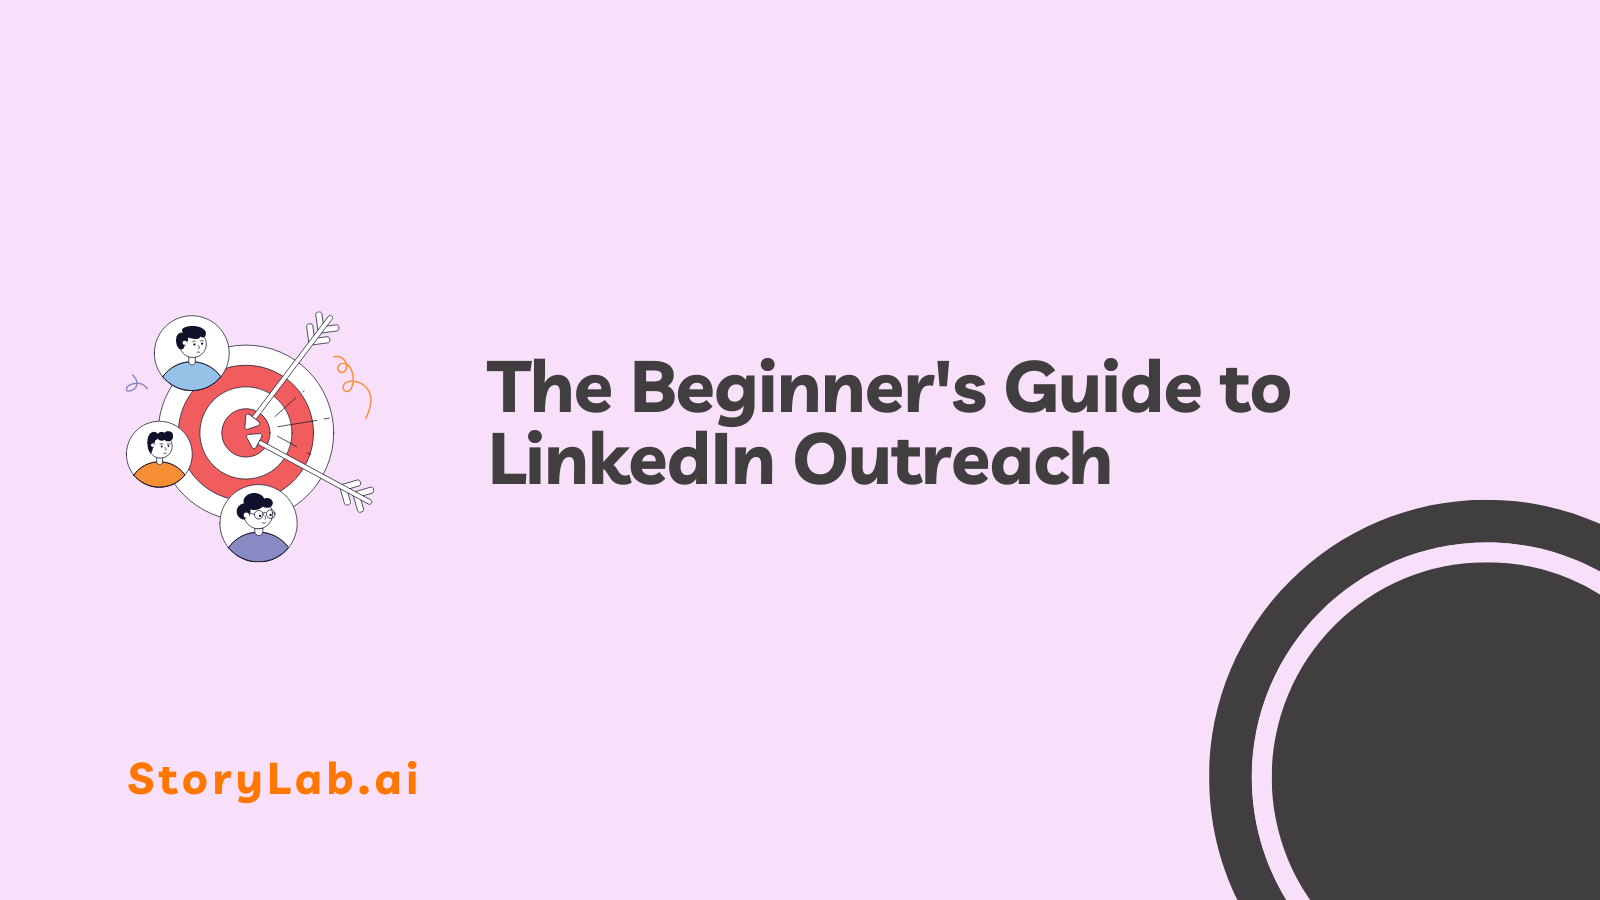 De beginnershandleiding voor LinkedIn Outreach